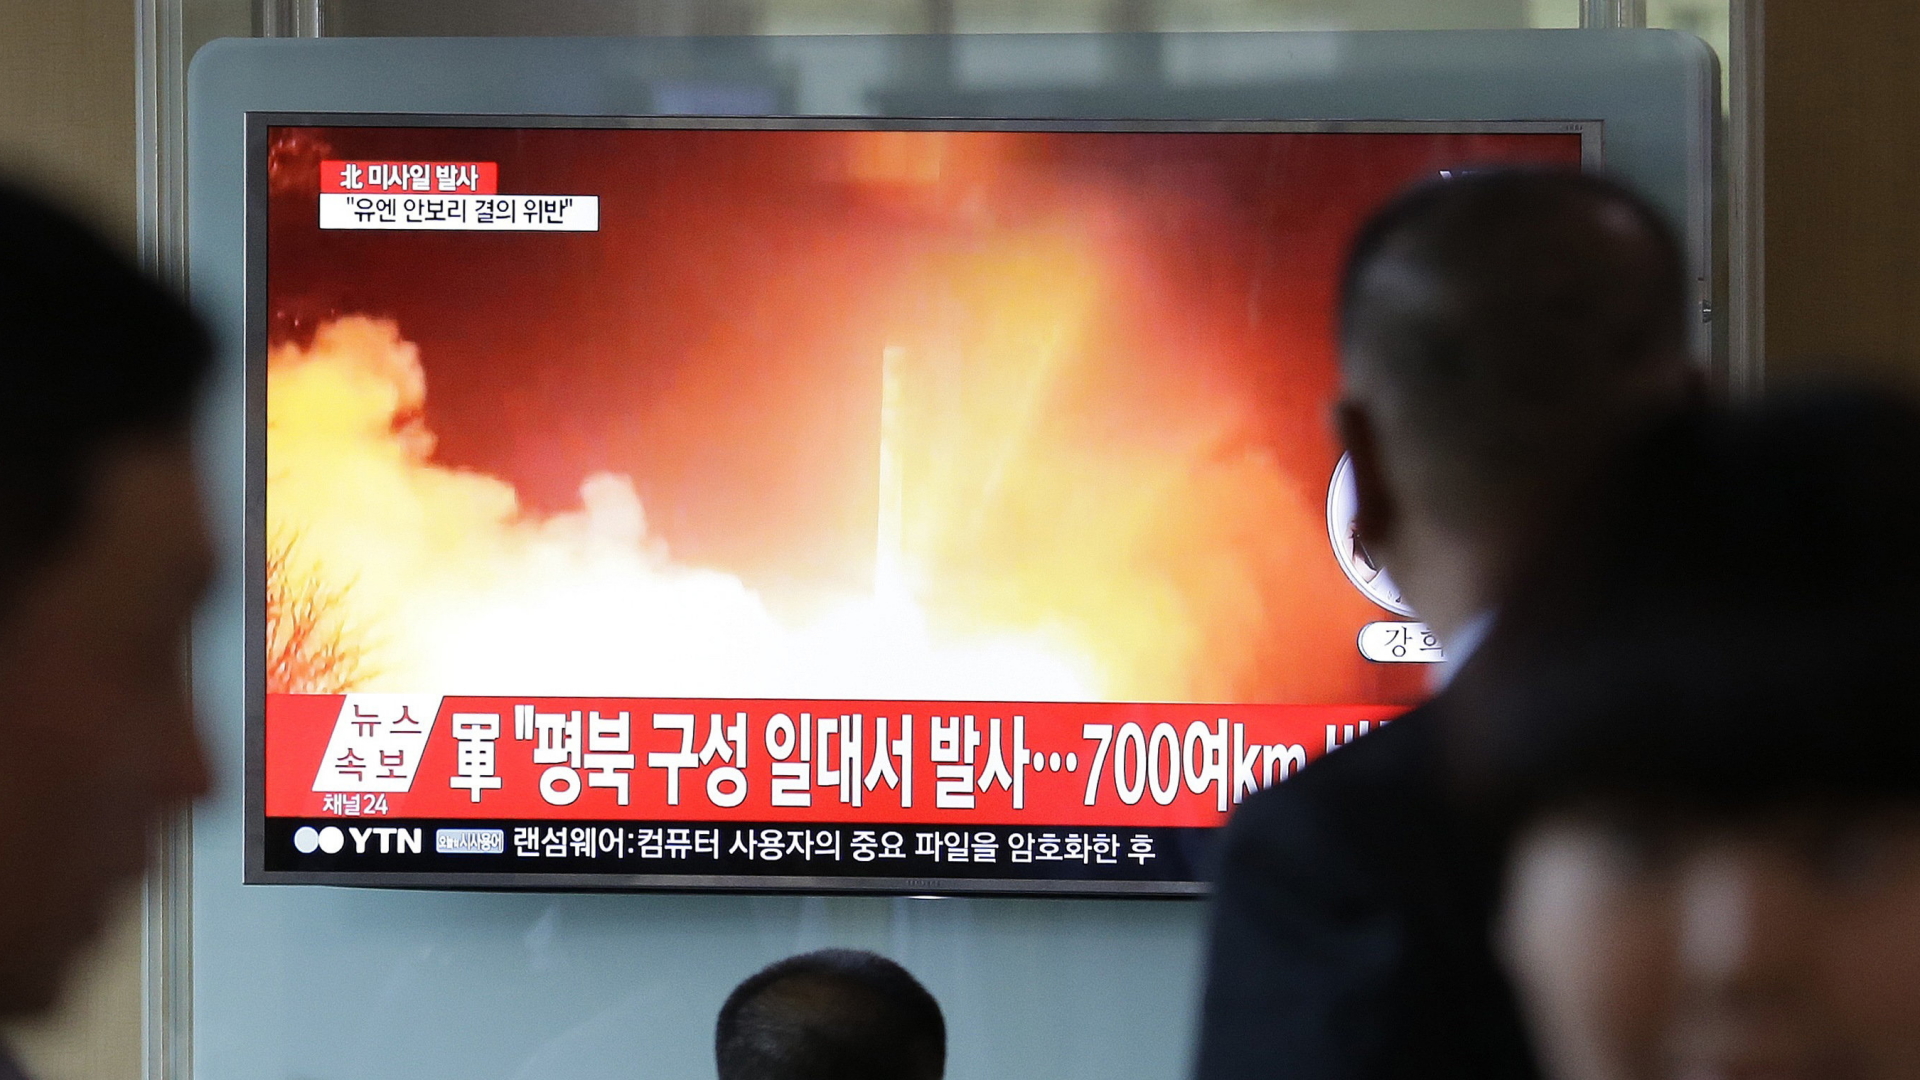 Menschen schauen am Bahnhof in Seoul in Südkorea auf einen TV-Bildschirm, auf dem eine Archivaufnahme von einem früheren nordkoreanischen Raketentest zu sehen ist. | dpa